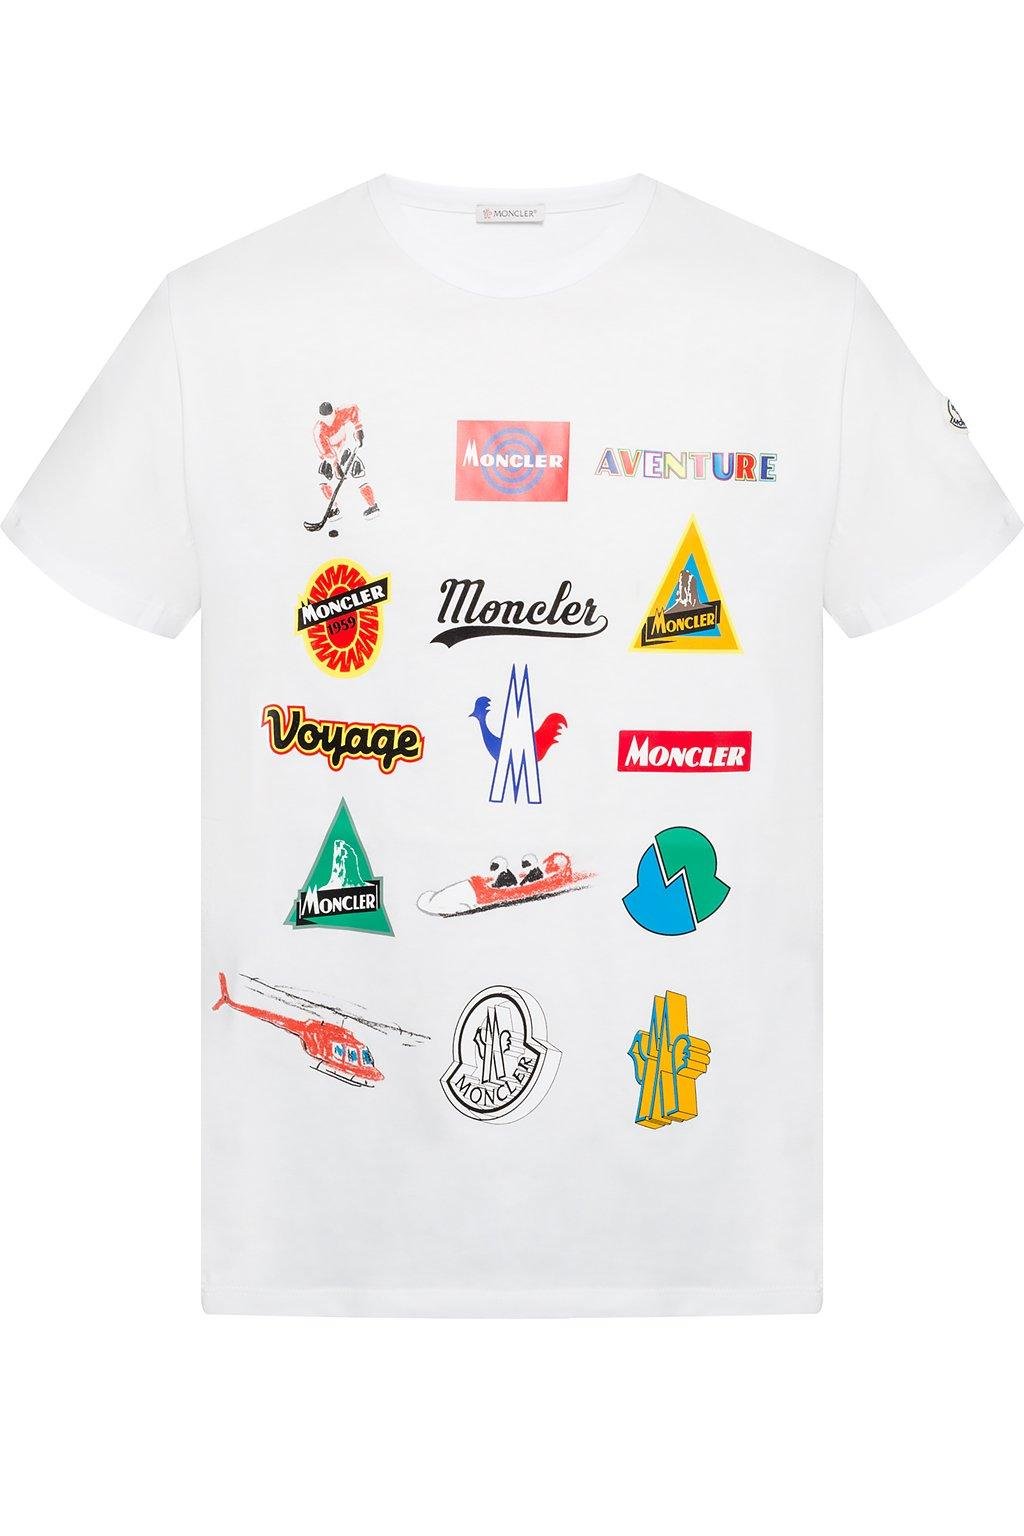 tot Buchhalter Material moncler t shirt logo Matchmaker Alabama kursiv